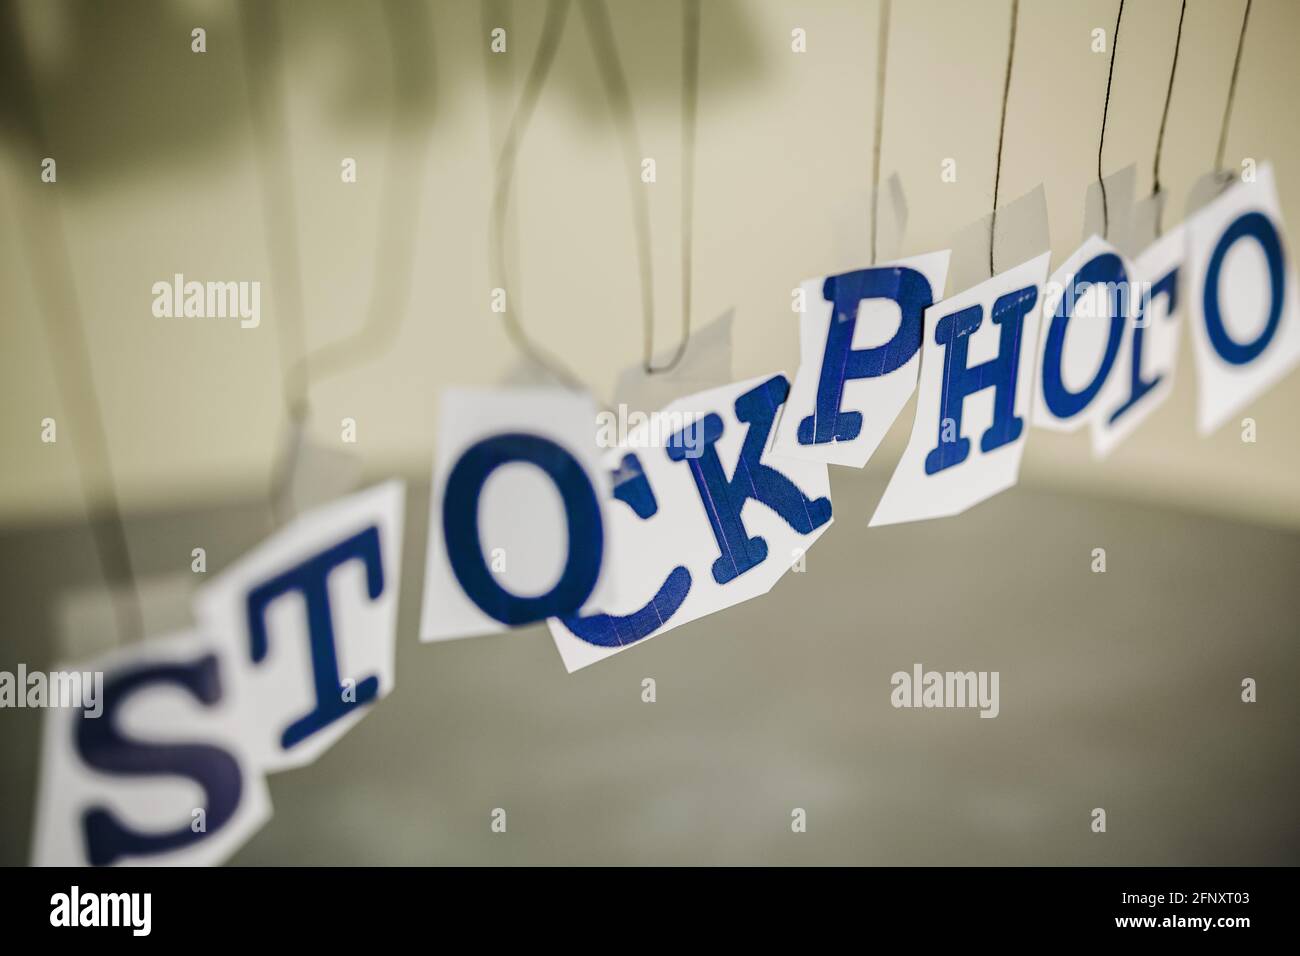 Dans un certain désordre, pendu, les lettres forment un mot: STOCKPHOTO. Banque D'Images